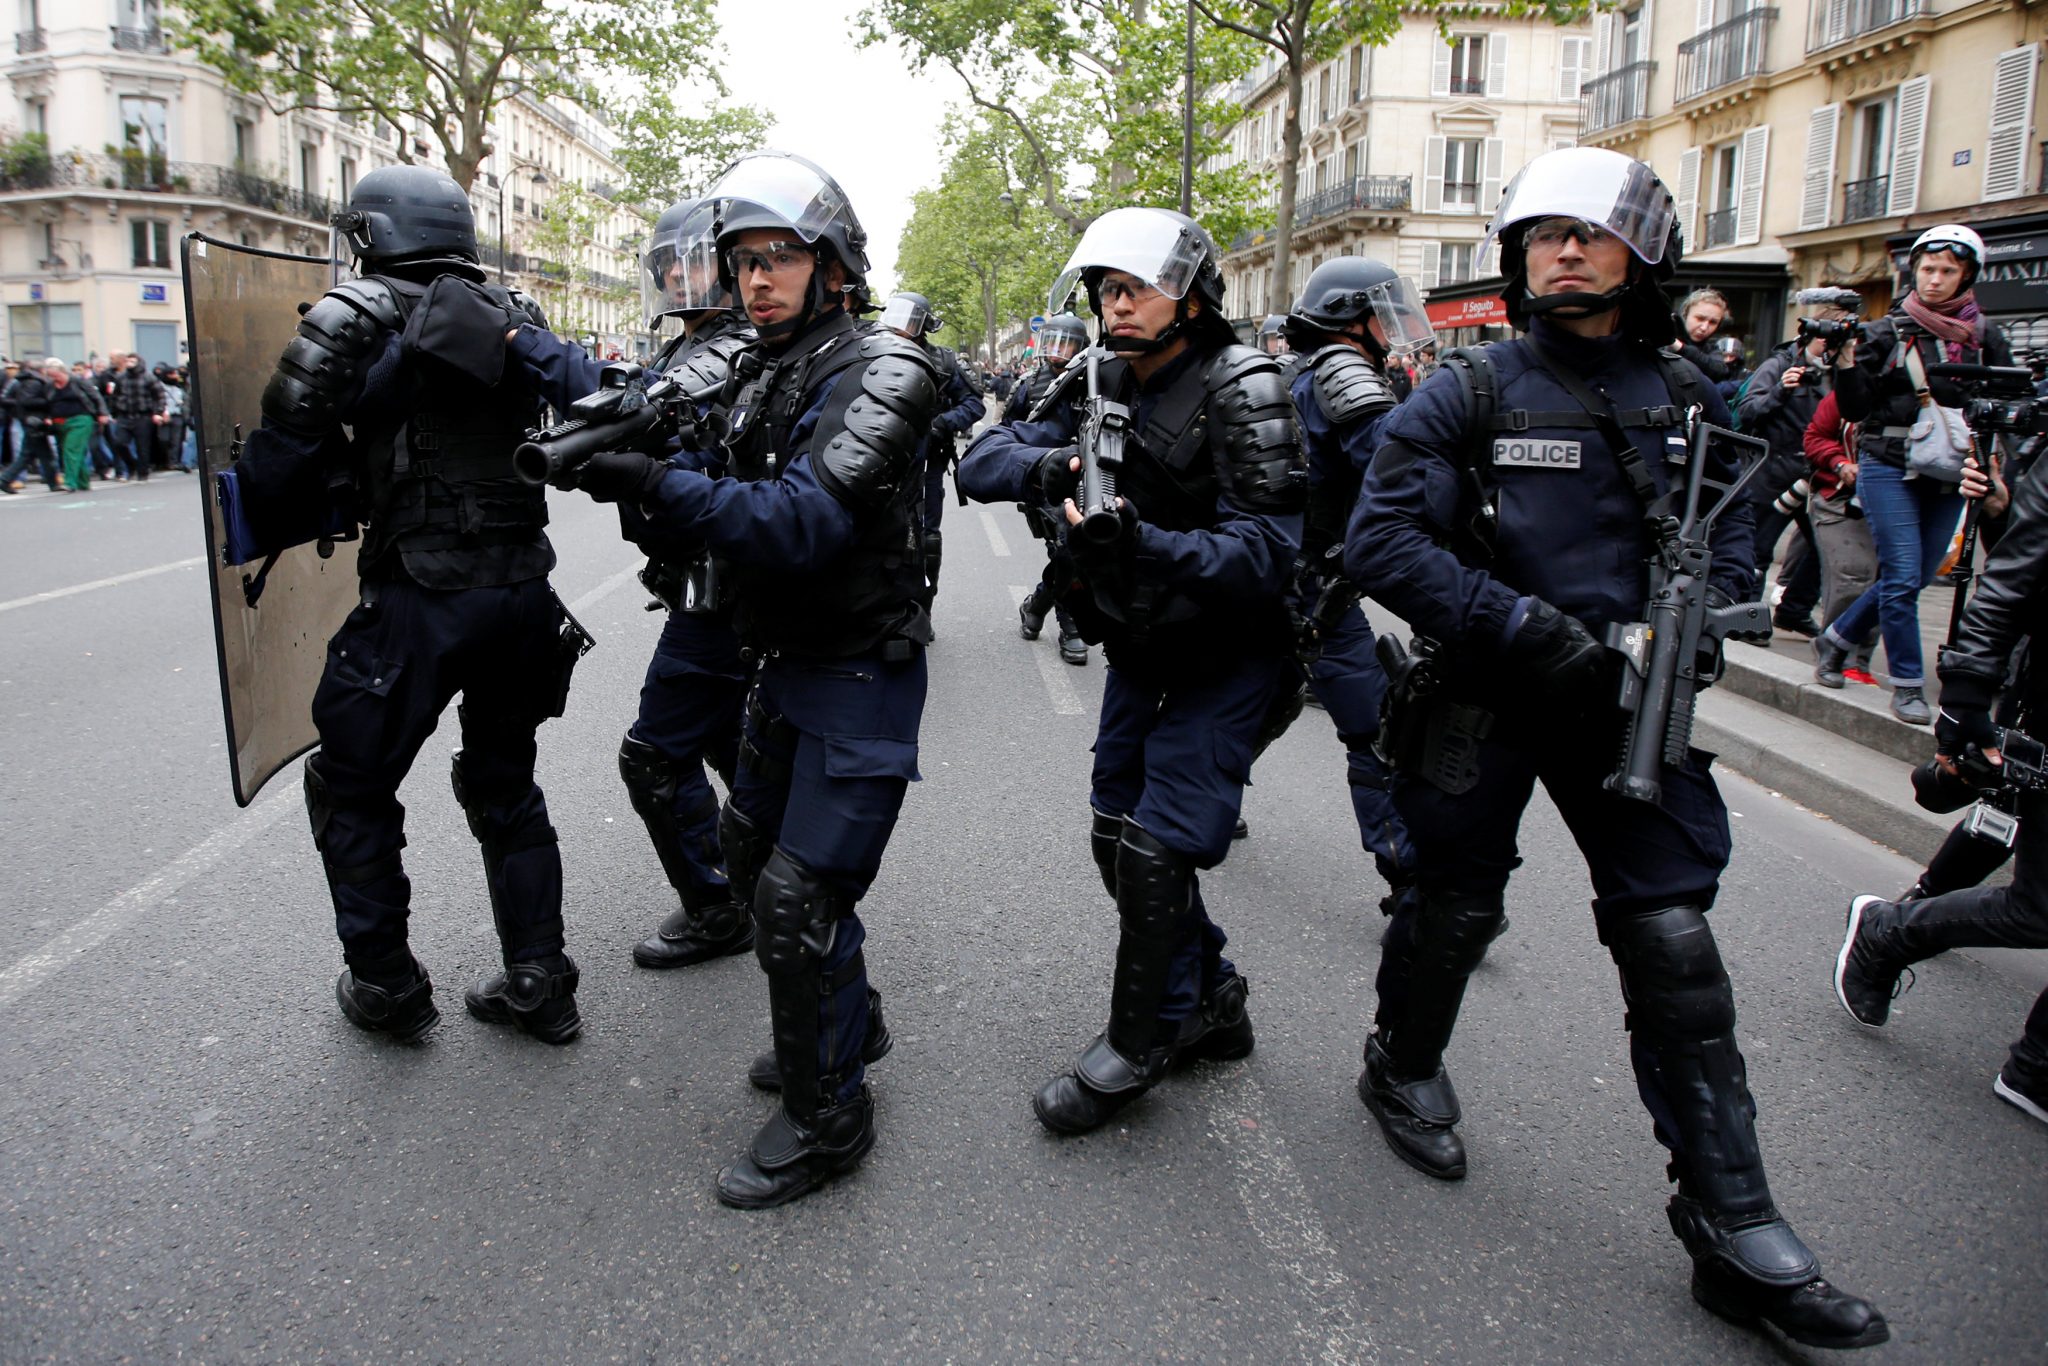   داعش الإرهابي يعلن مسؤوليته عن هجوم باريس